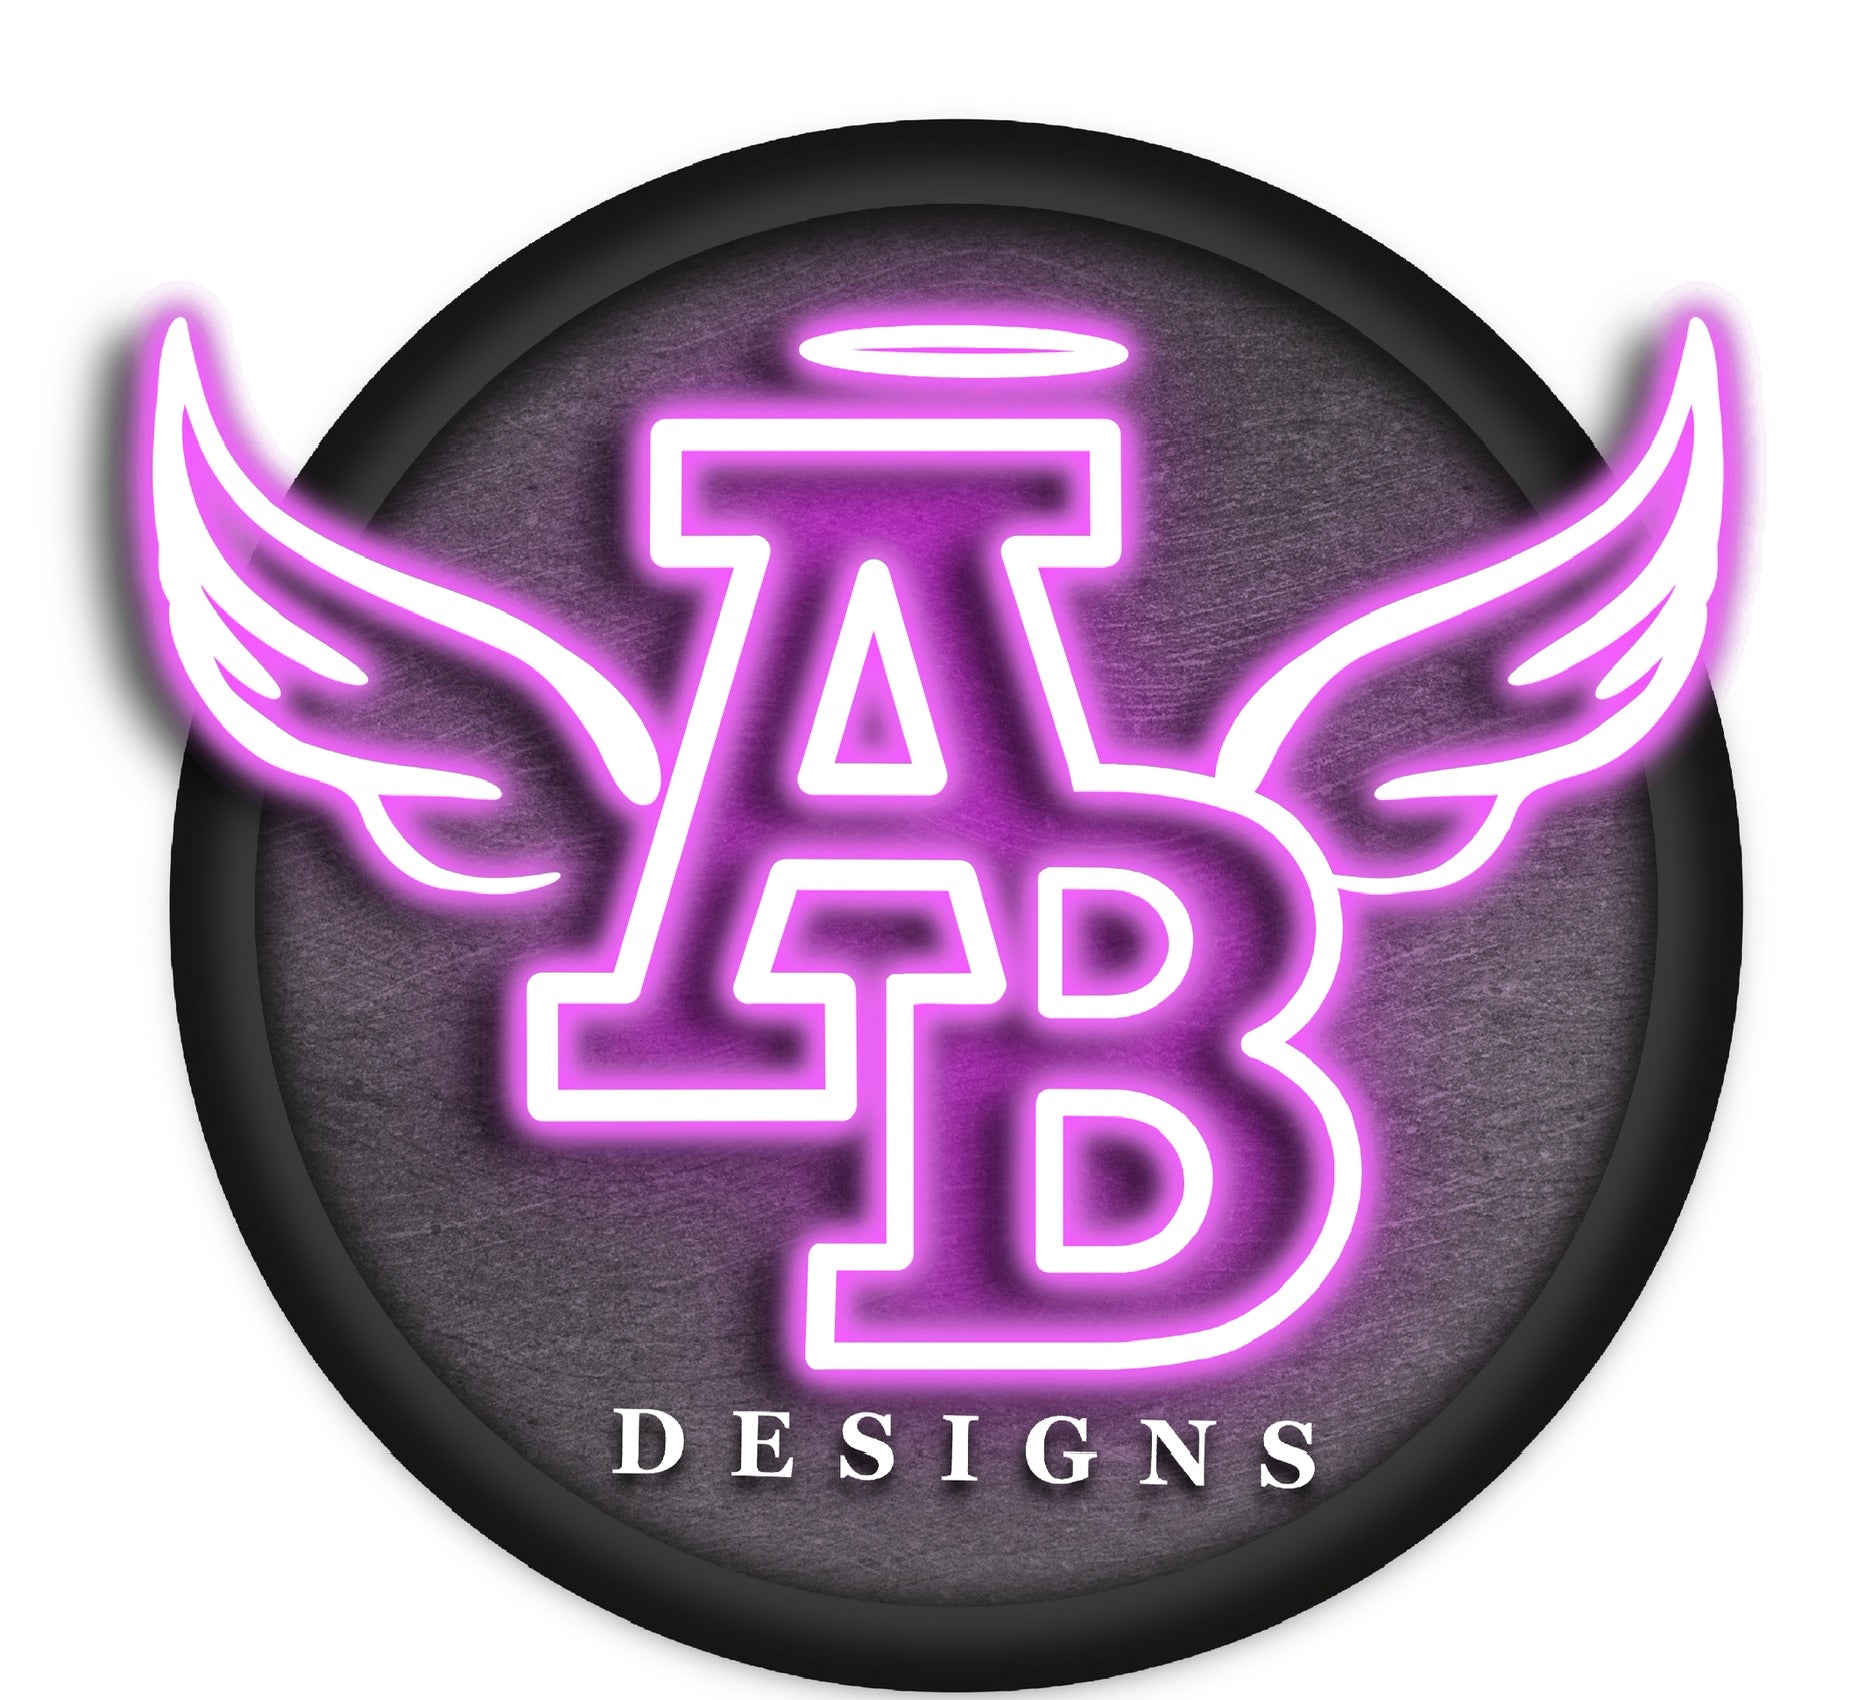 AB Designs